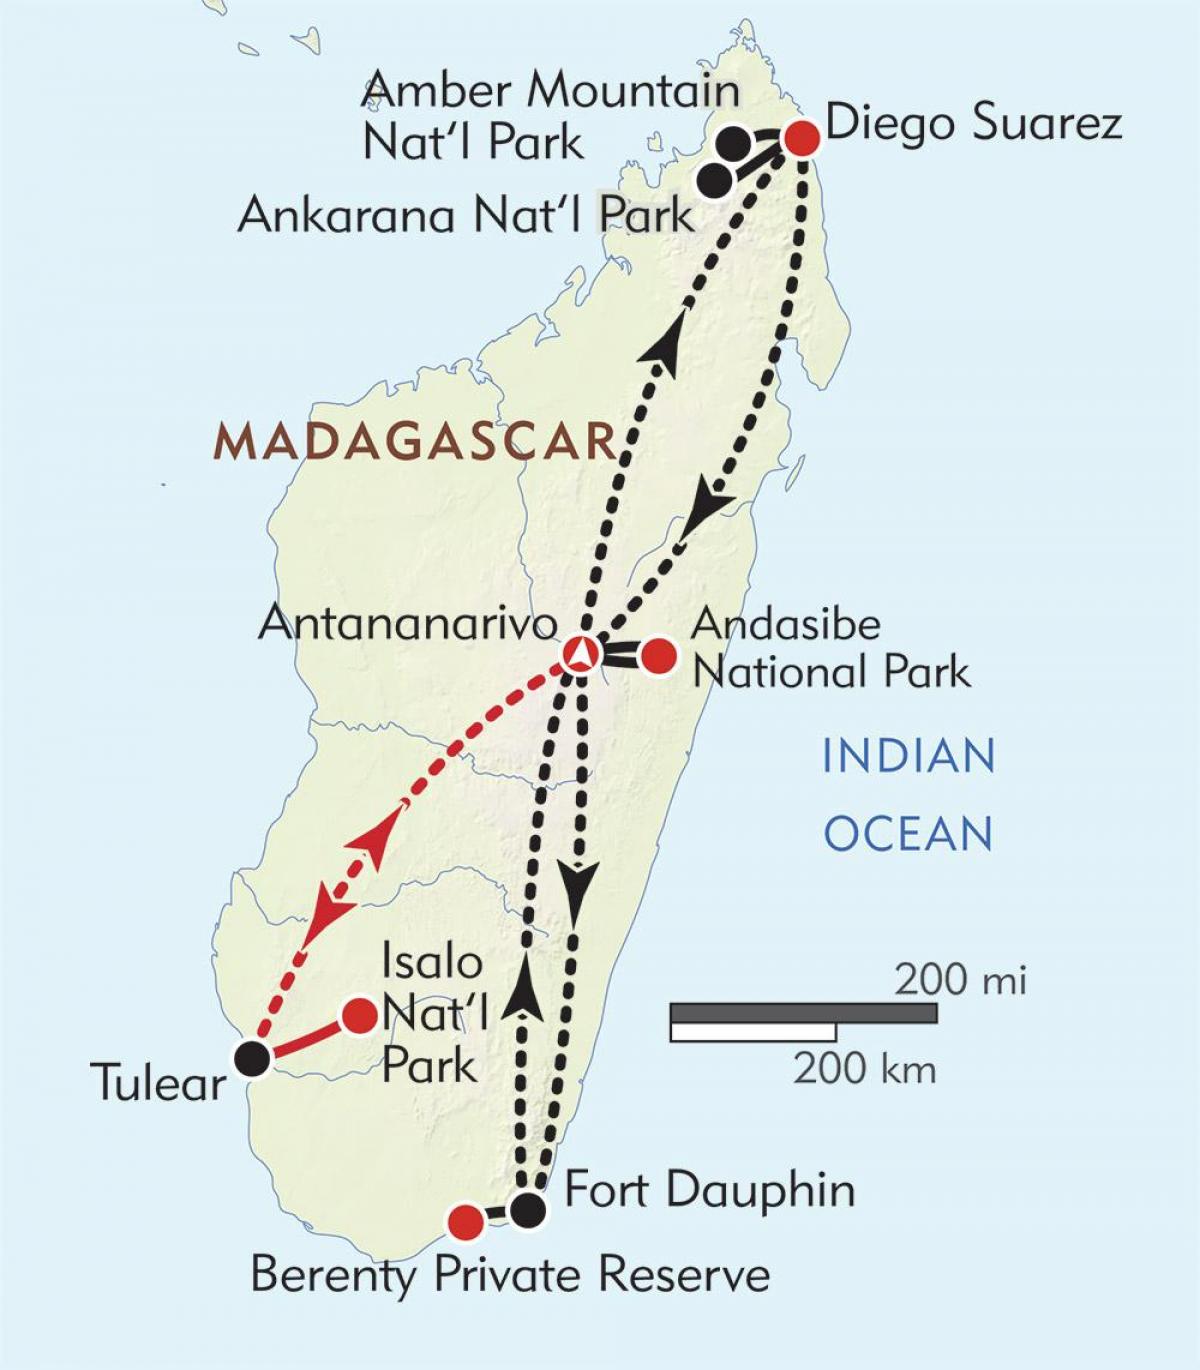 антананариву, Մադագասկար քարտեզ